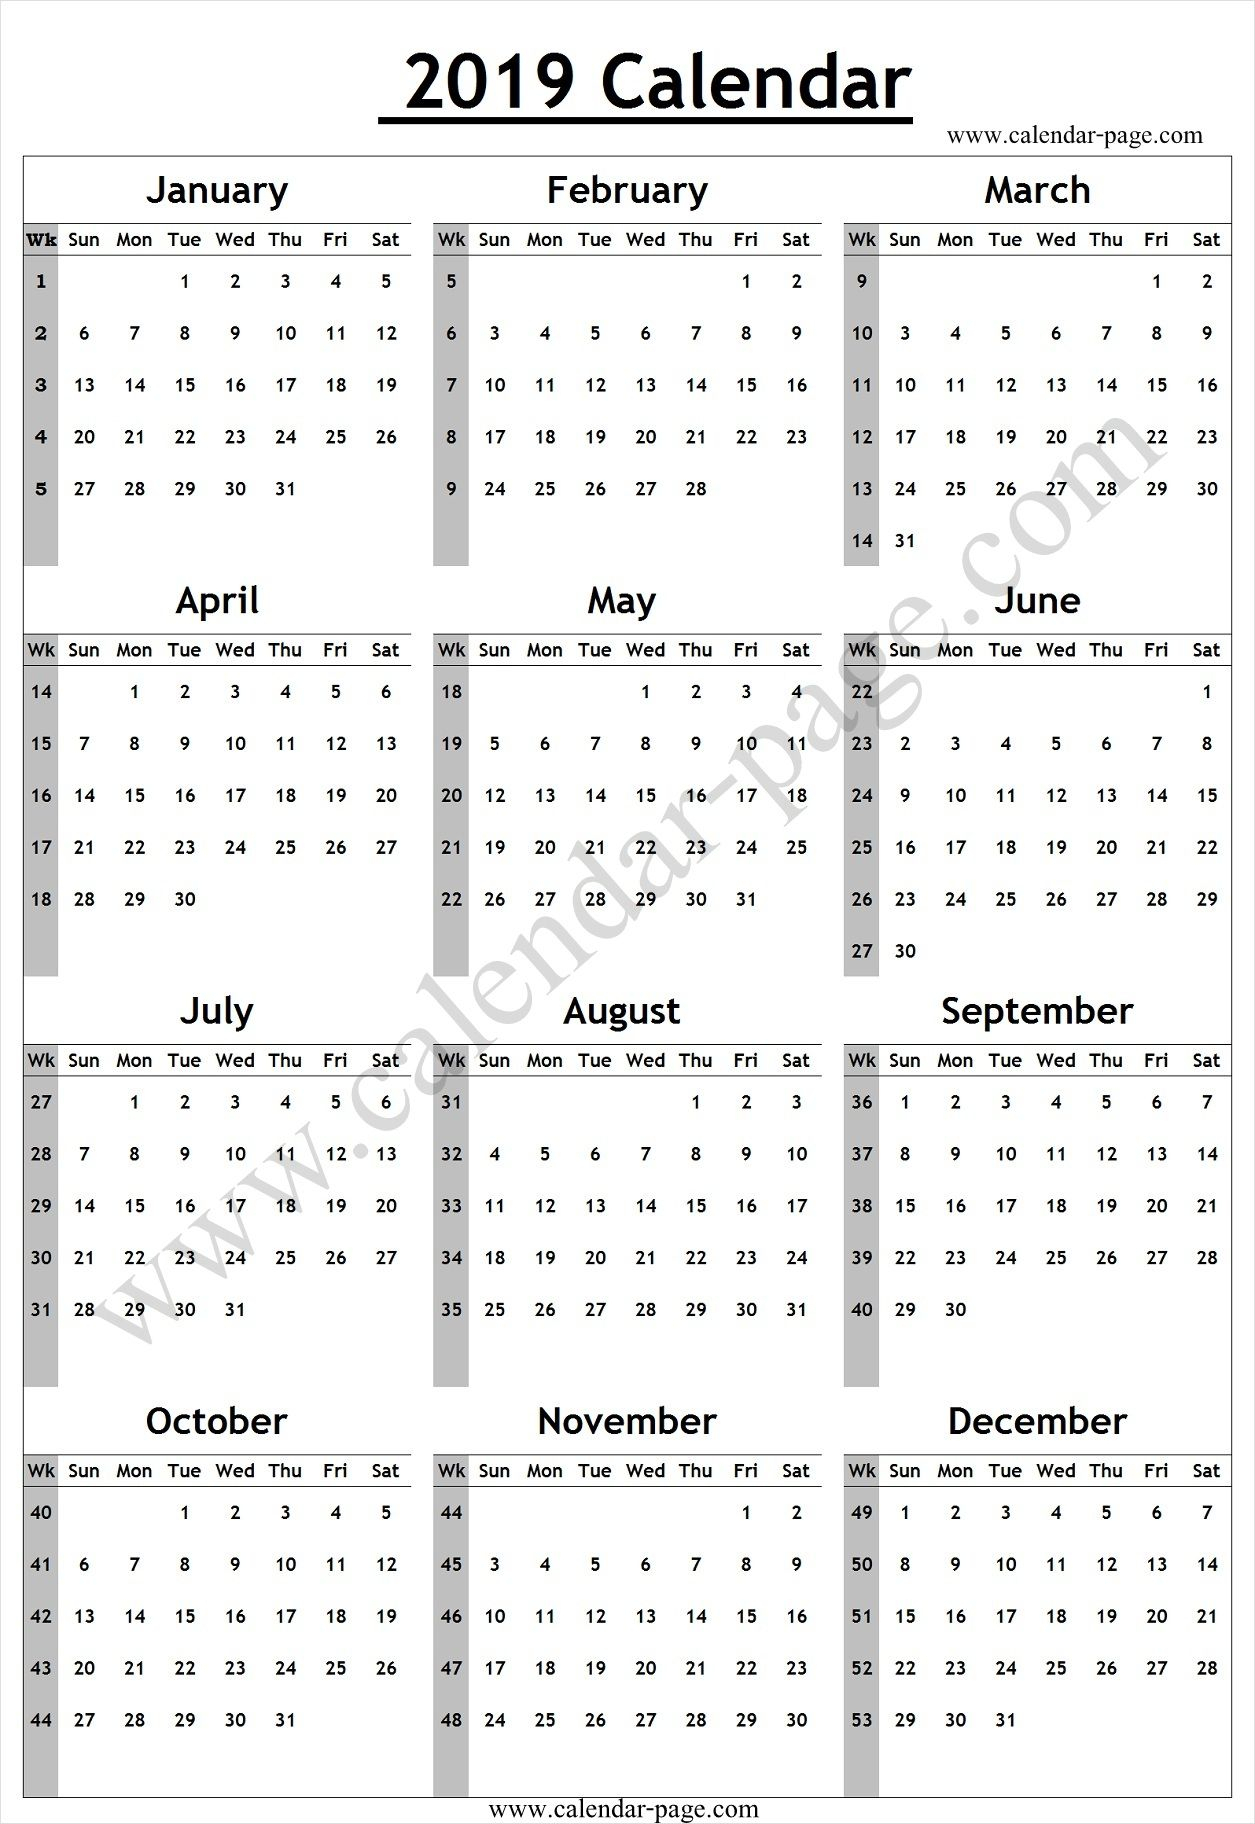 Calendar 2019 With Week Numbers | Calendar 2019 With Week